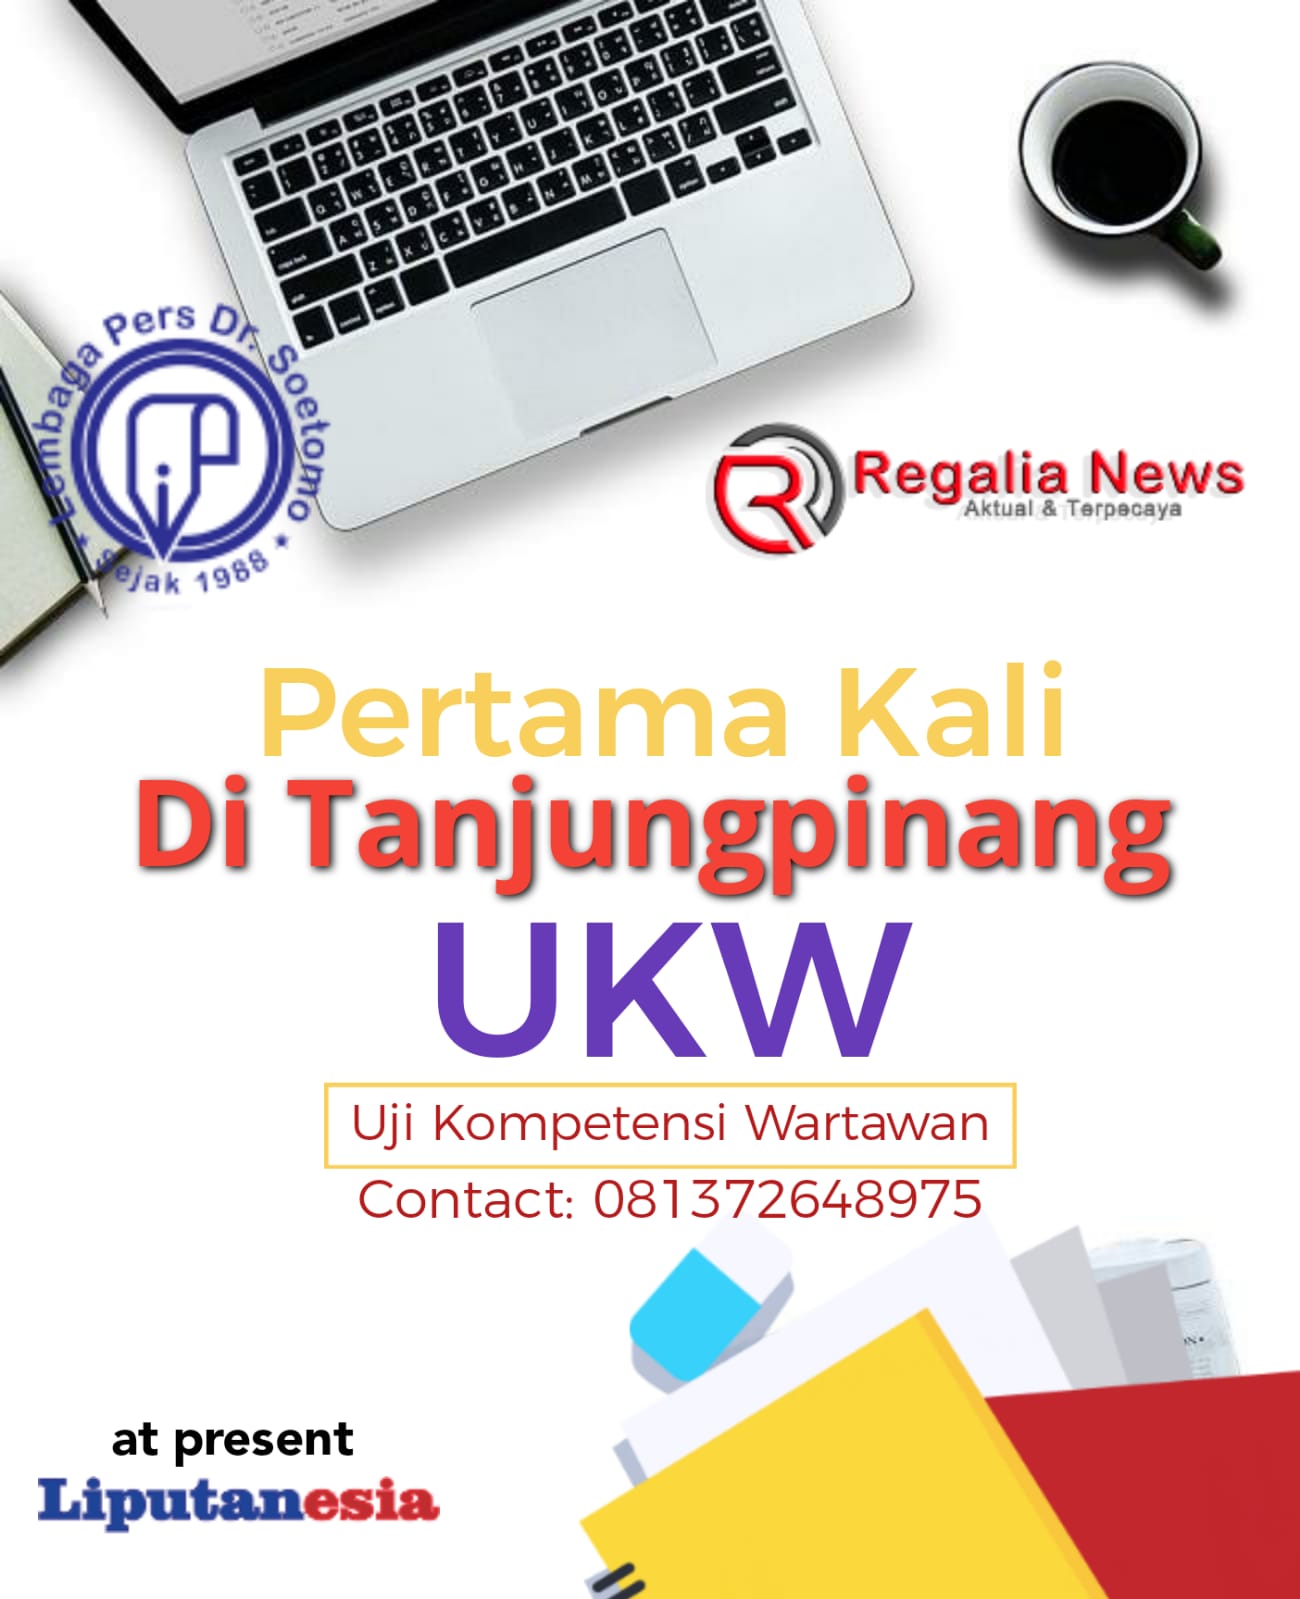 Regalianews Bersama LPDS Lakukan Uji Kompetensi Wartawan Pertama di Tanjungpinang